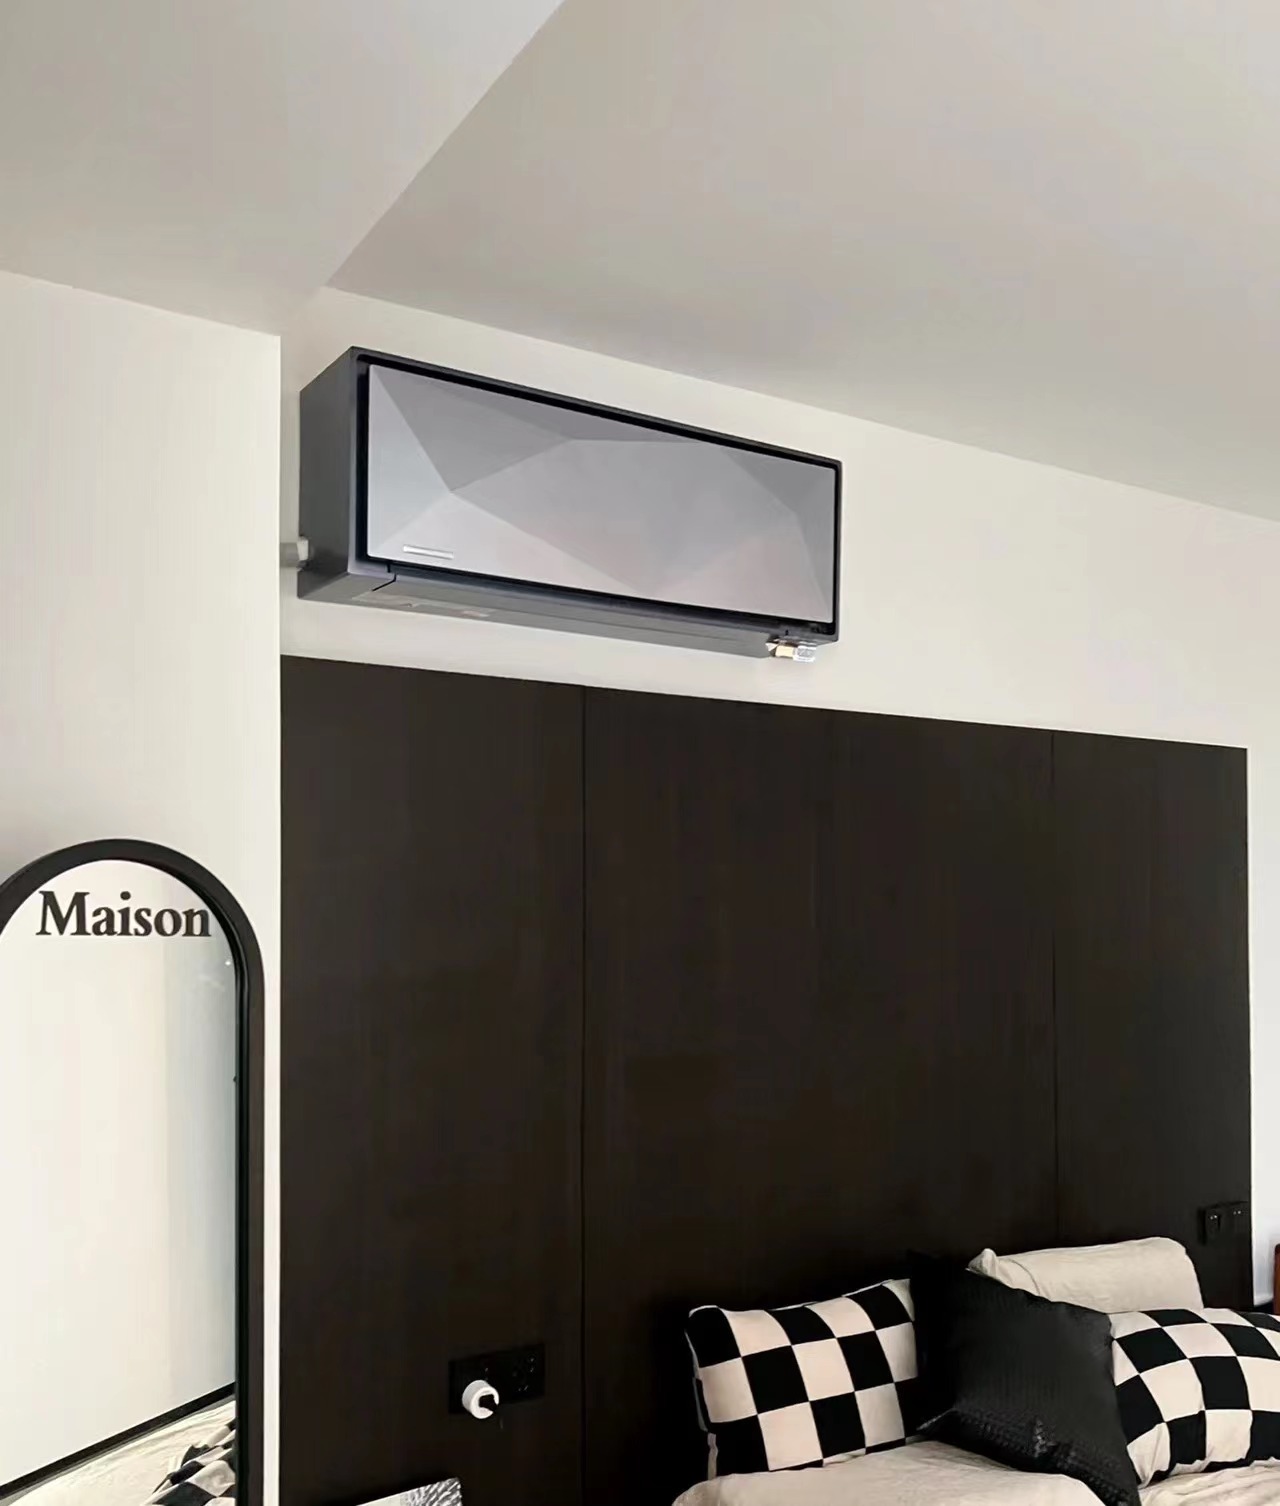 室内空调安装注意事项有哪些方面？